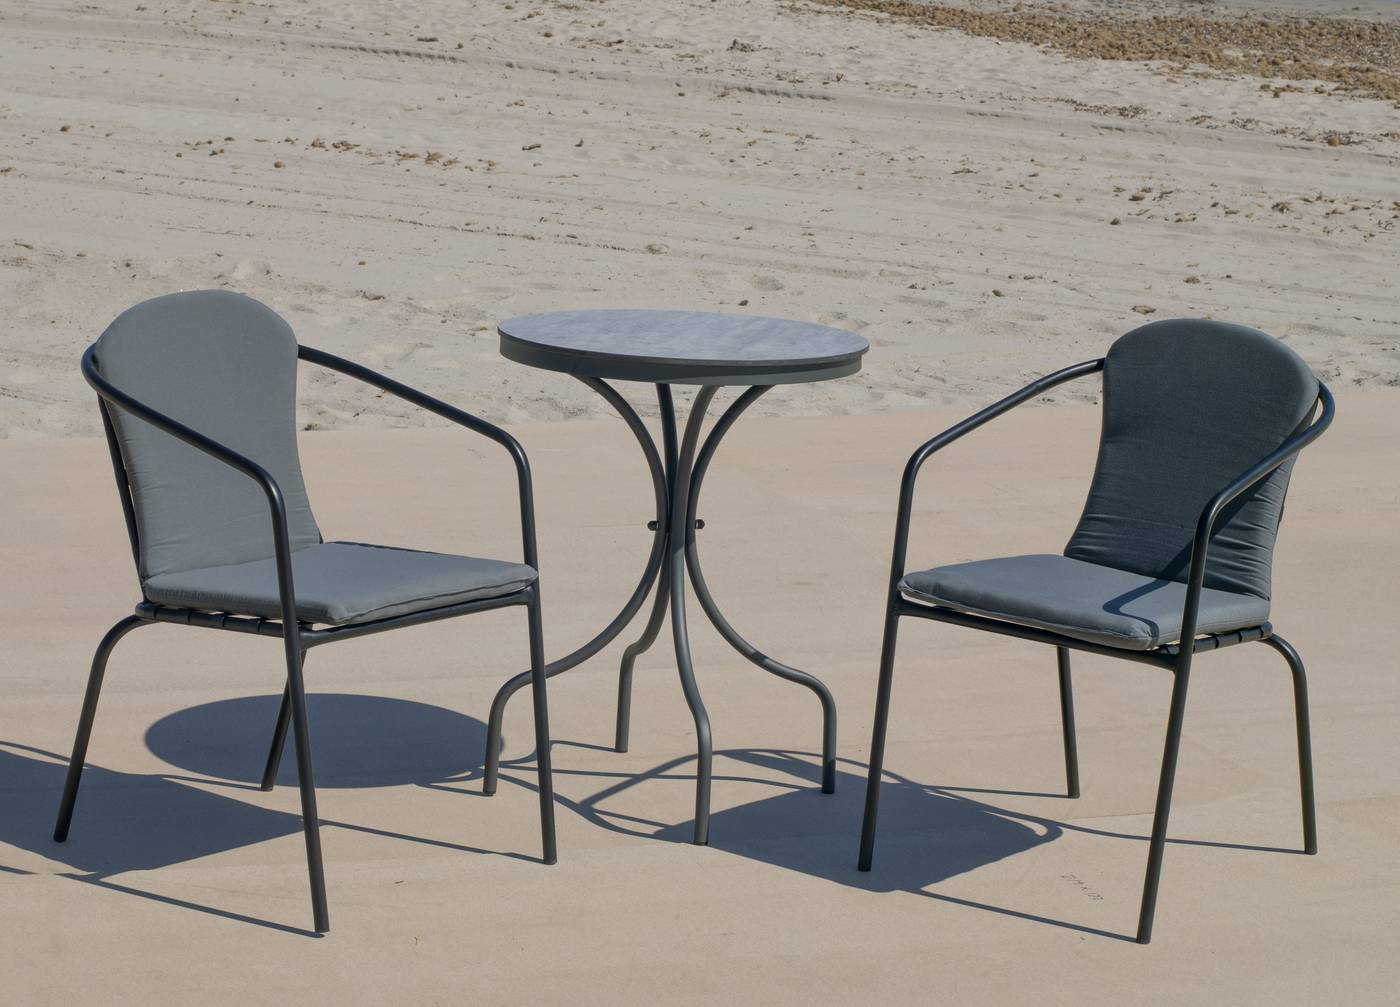 Sillón Aluminio Marsel - Sillón apilable de aluminio color marrón o antracita, con cojín asiento y respaldo a juego.